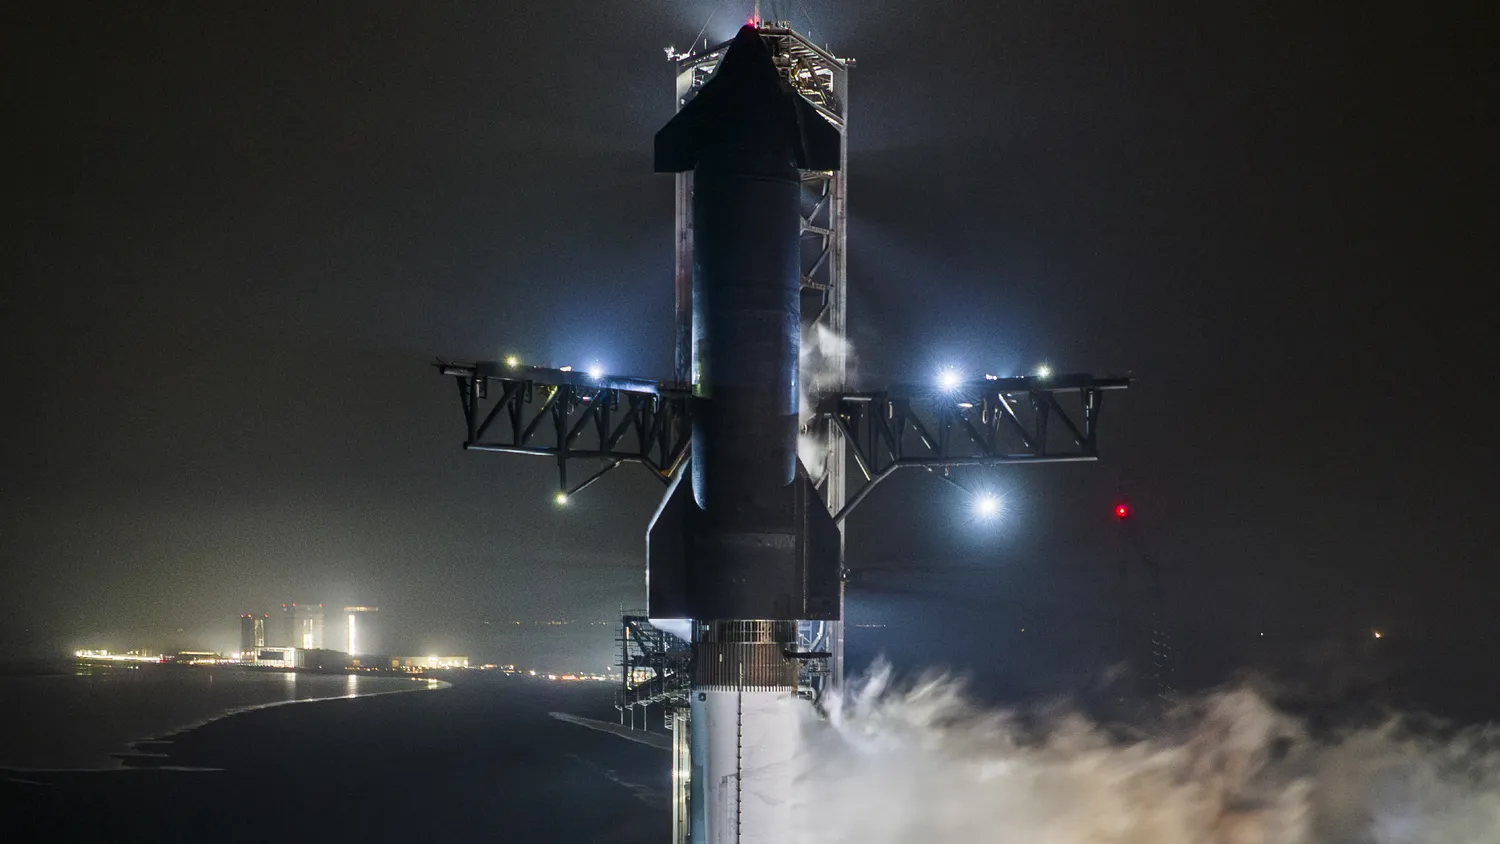 eine große schwarz-silberne Rakete stößt bei Nacht Dampf aus, während sie aufrecht auf einer Startrampe steht